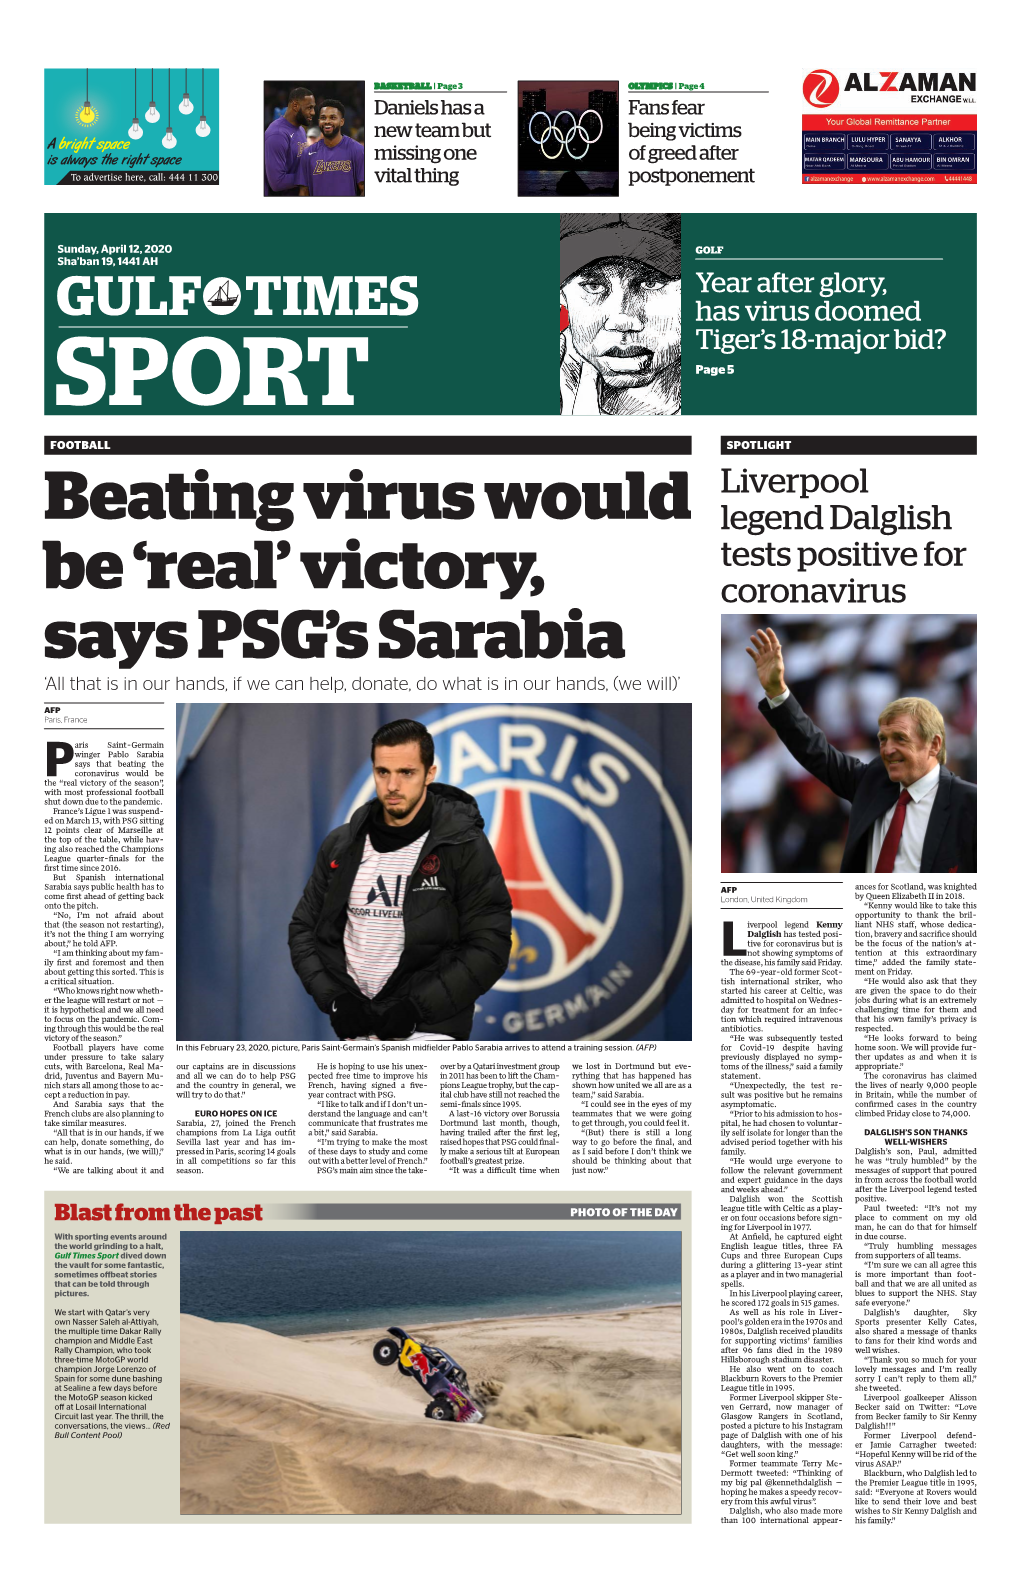 Victory, Says PSG's Sarabia